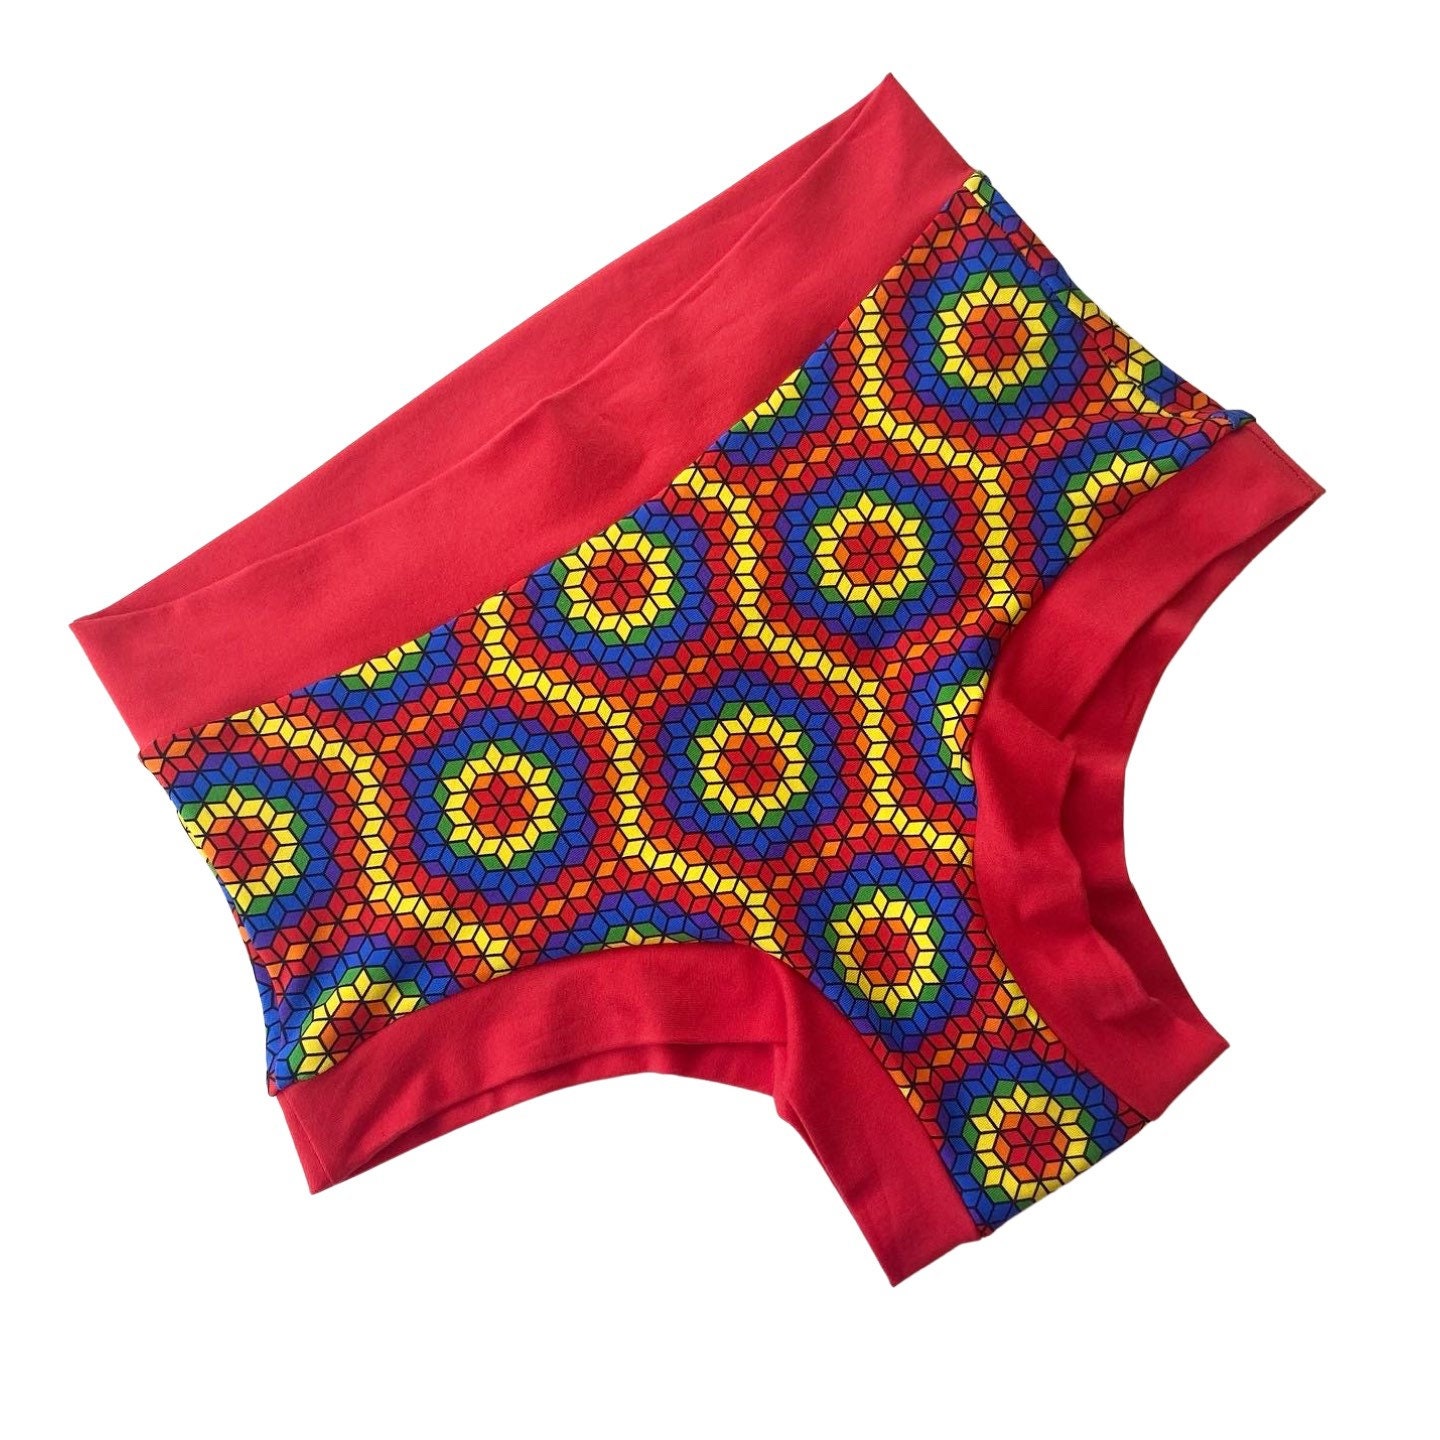 Buy High Waist Underwear Cheeky Online In India -  India